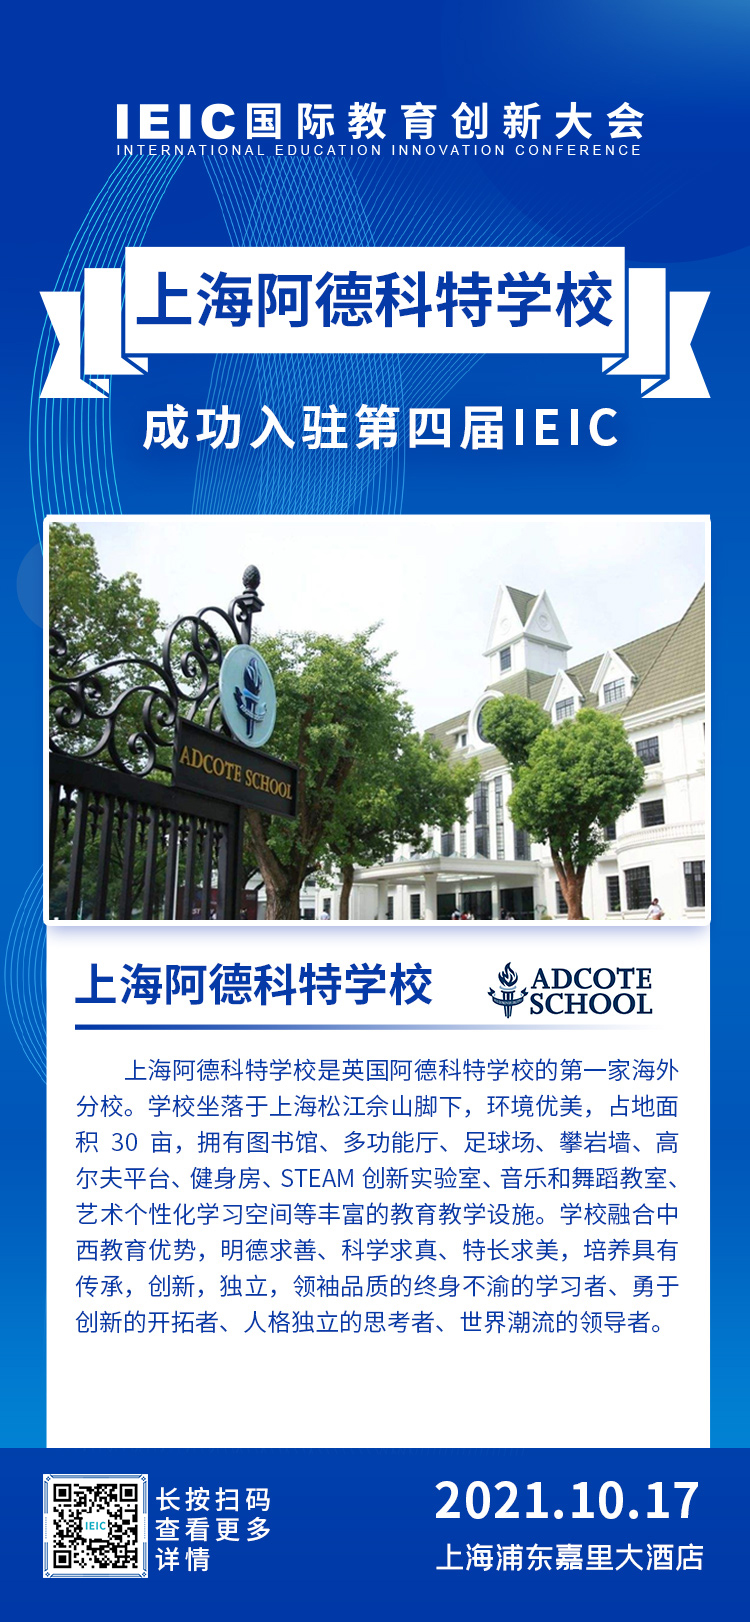 上海阿德科特学校|入驻参展2021年远播第四届IEIC国际教育创新大会